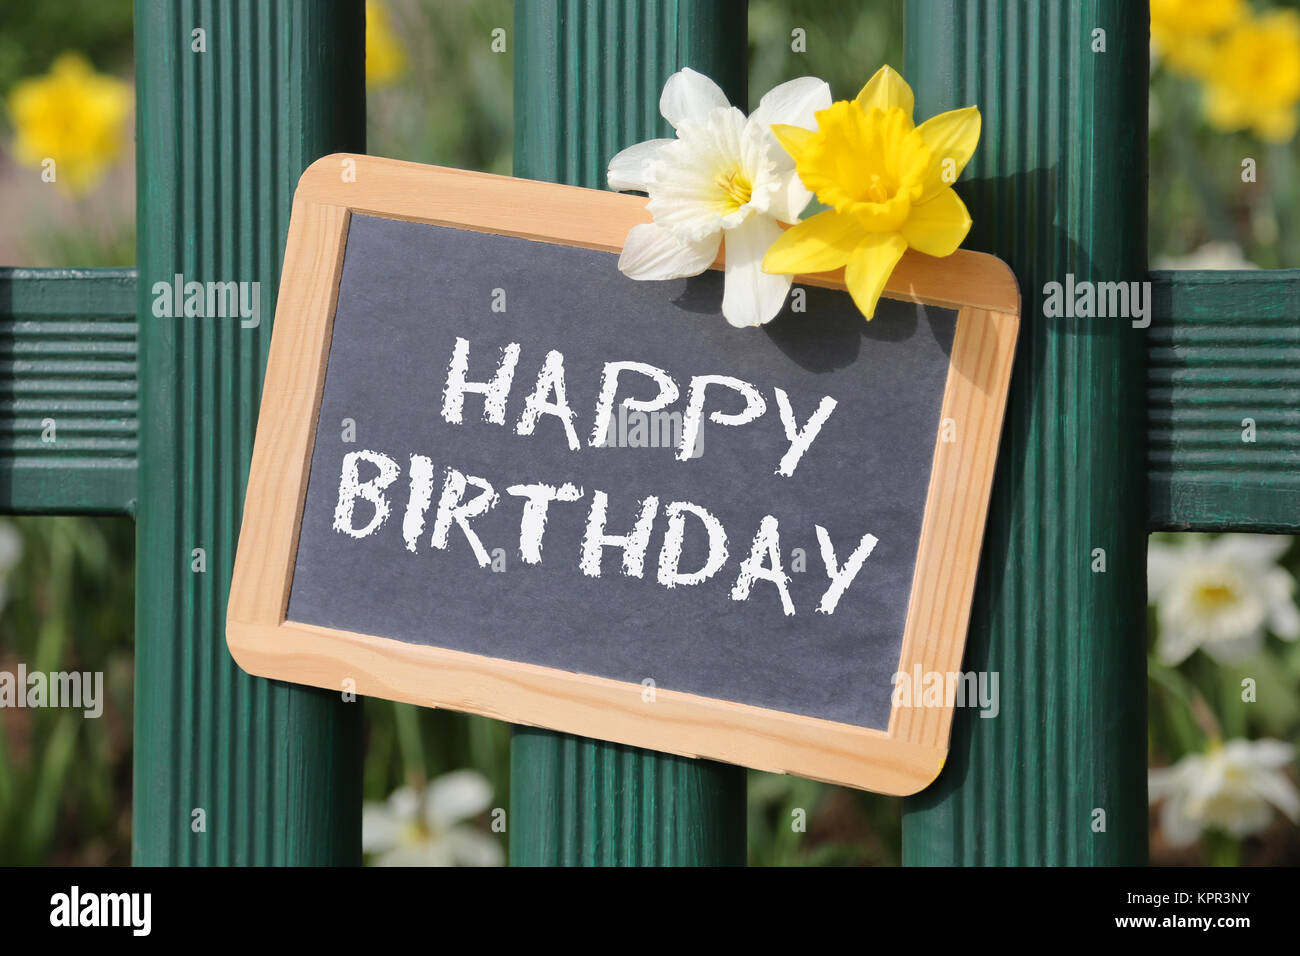 Happy Birthday Geburtstag Karte Geburtstagskarte Garten mit Blumen Blume  Tafel Schild auf Zaun Stock Photo - Alamy